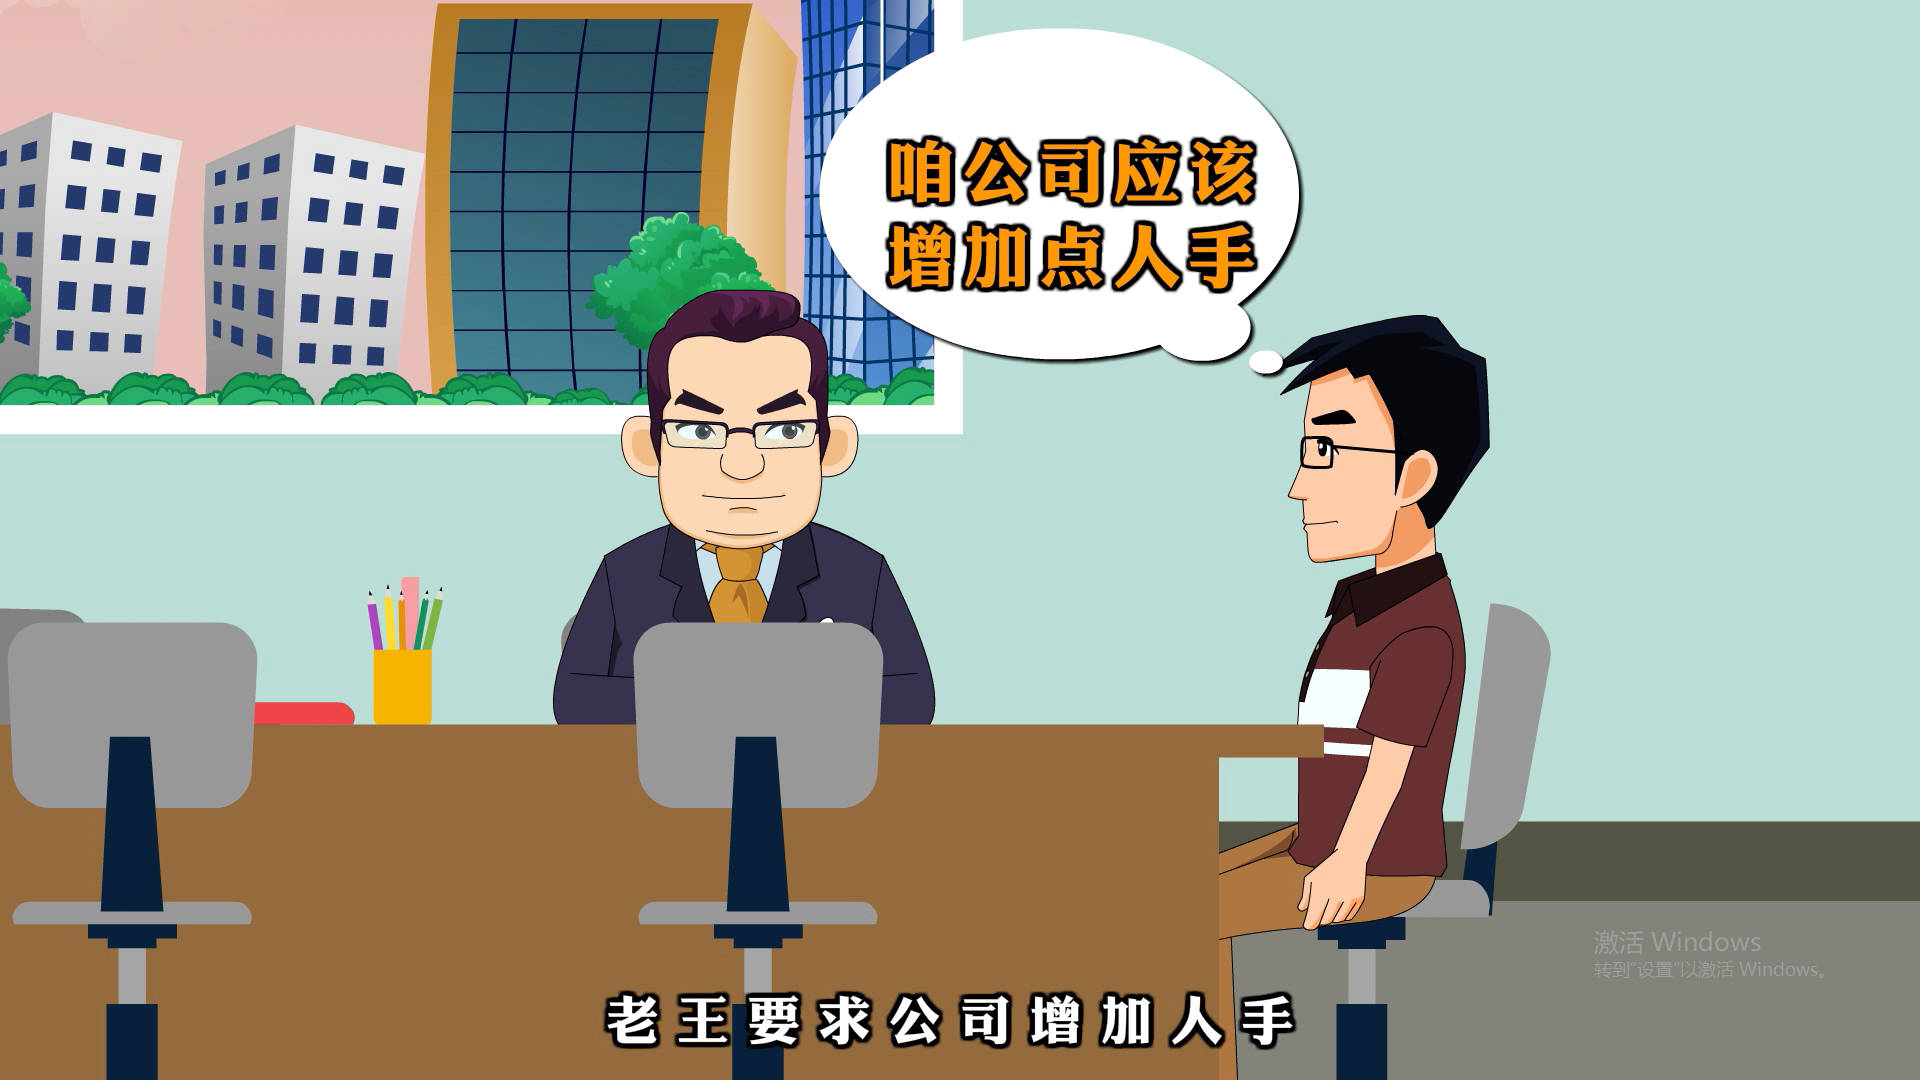 重庆法制类劳动法MG动画宣传视频插图1